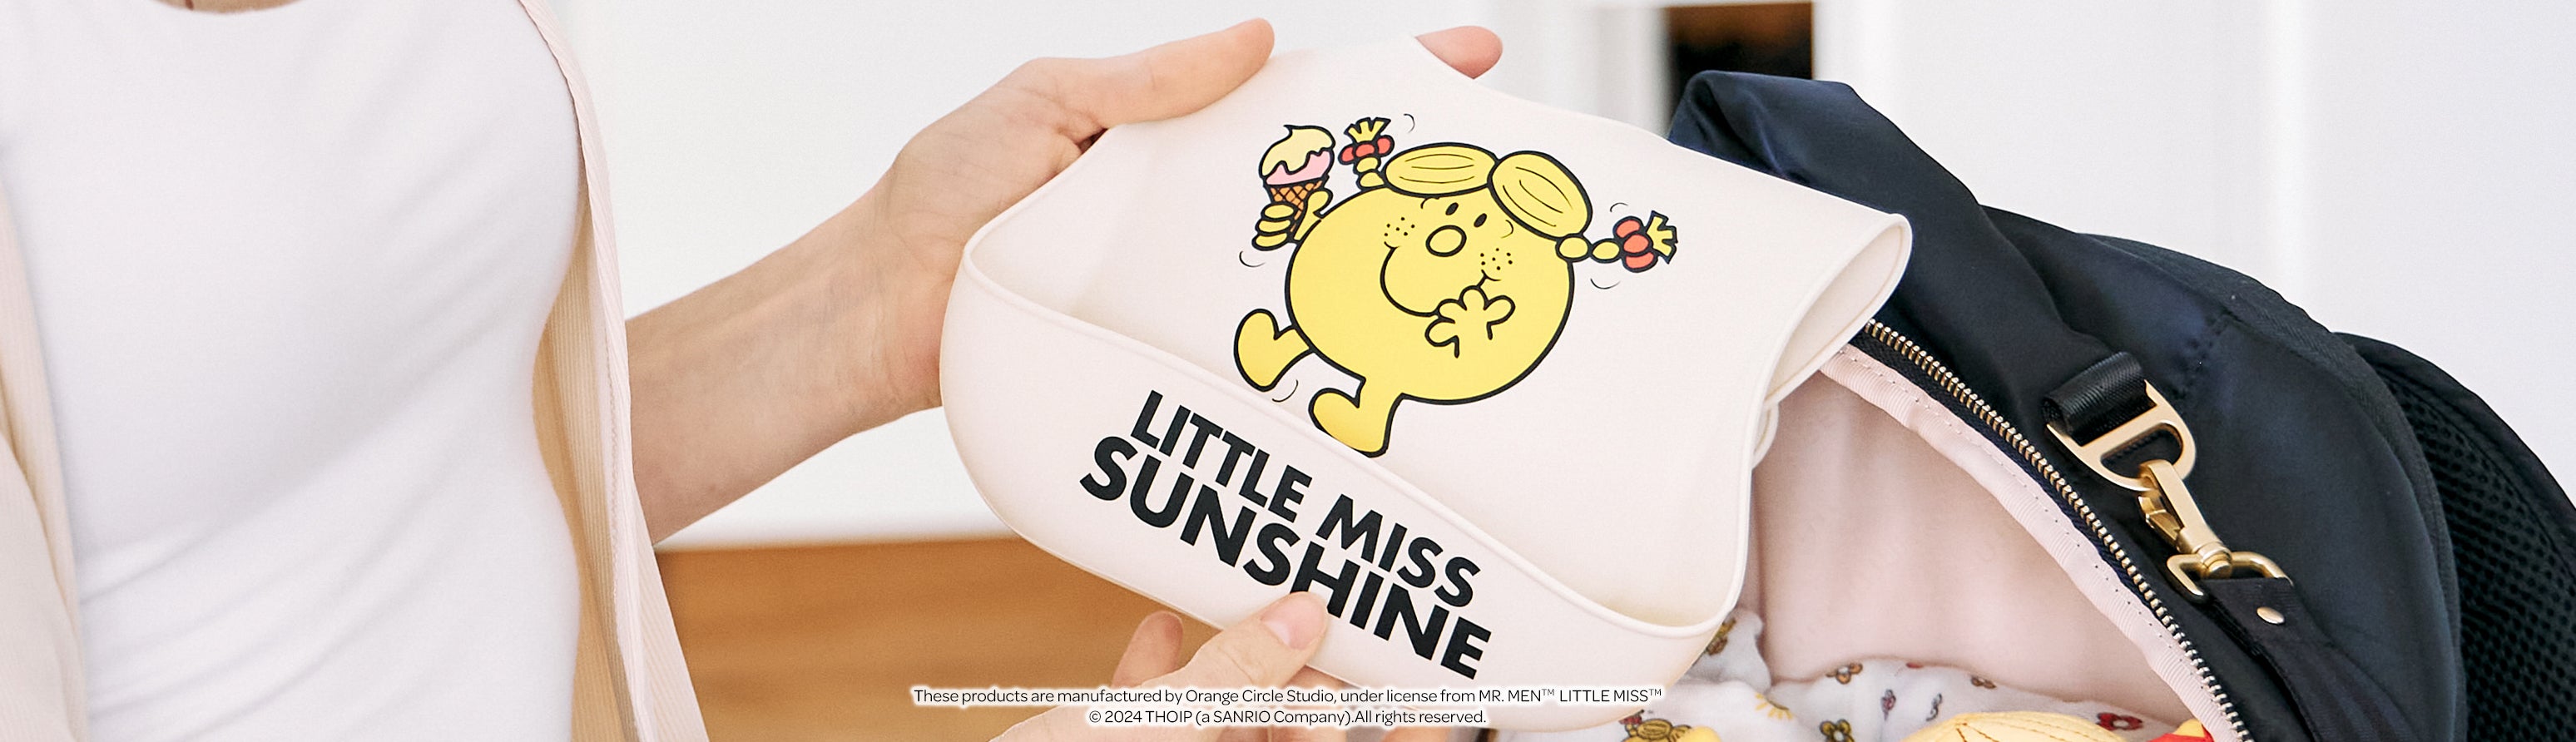 Baby Essentials: Mr. Men and Miss Sunshine